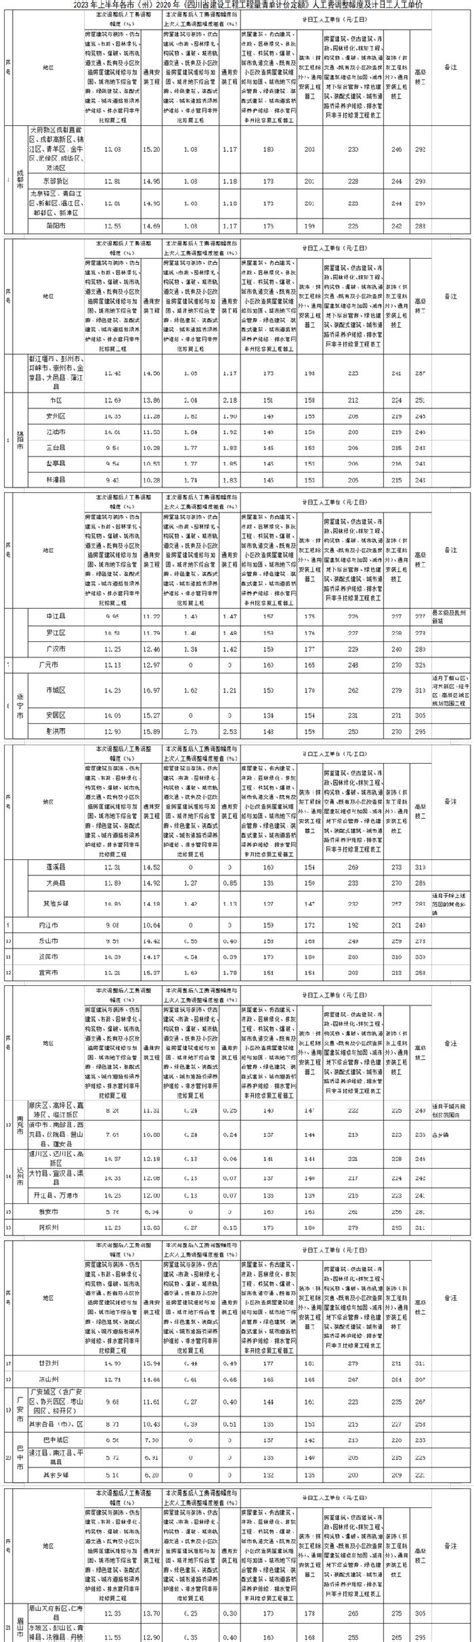 四川省建筑工程造价指数（2021年上半年）_广材资讯_广材网